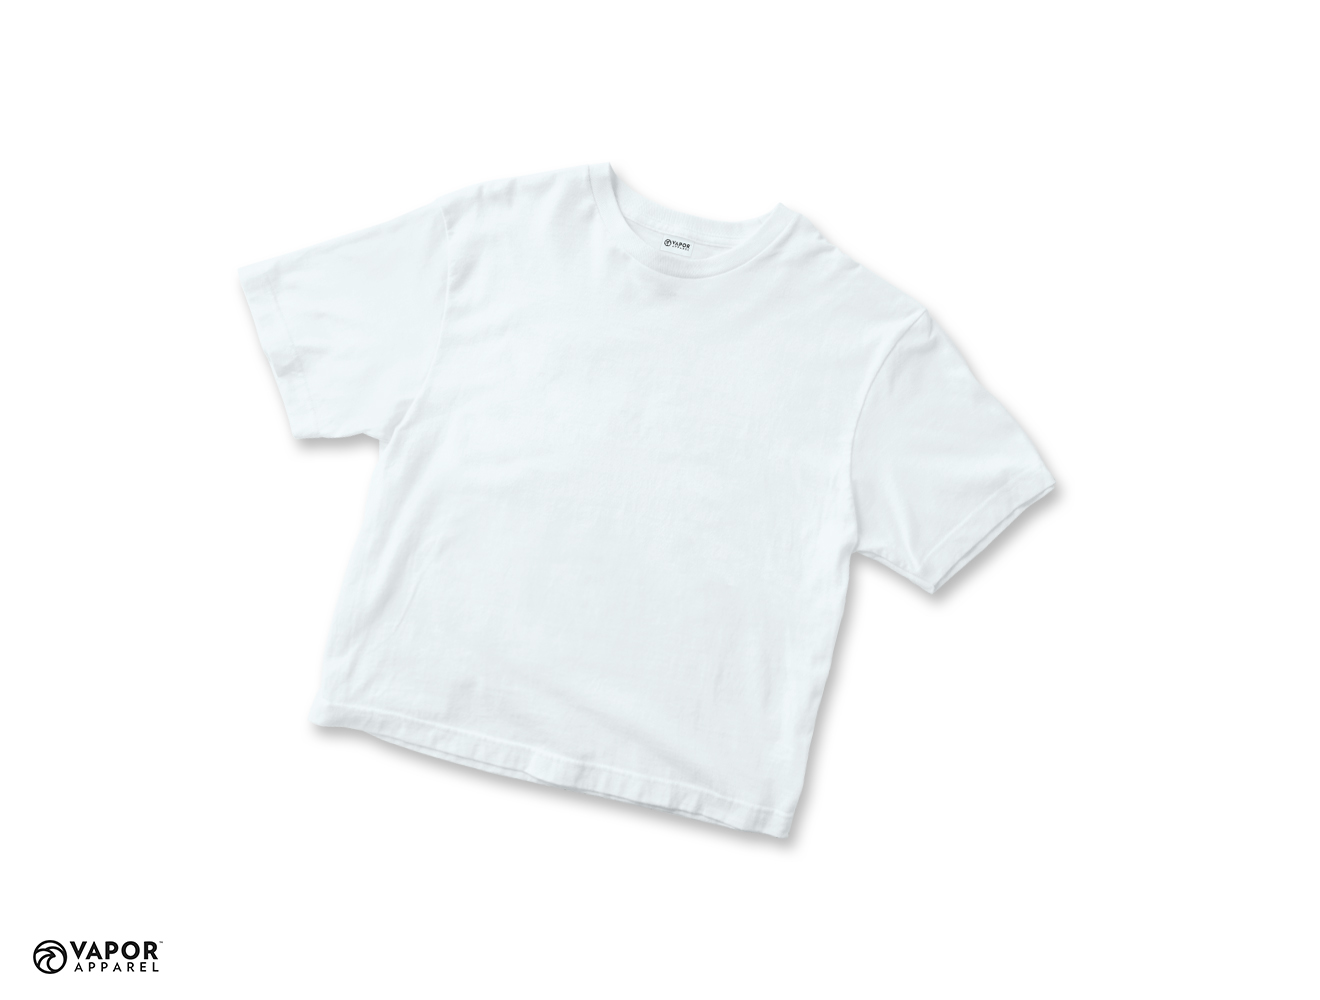 Vapor Sublimation T-Shirt for Junior size 152 - White